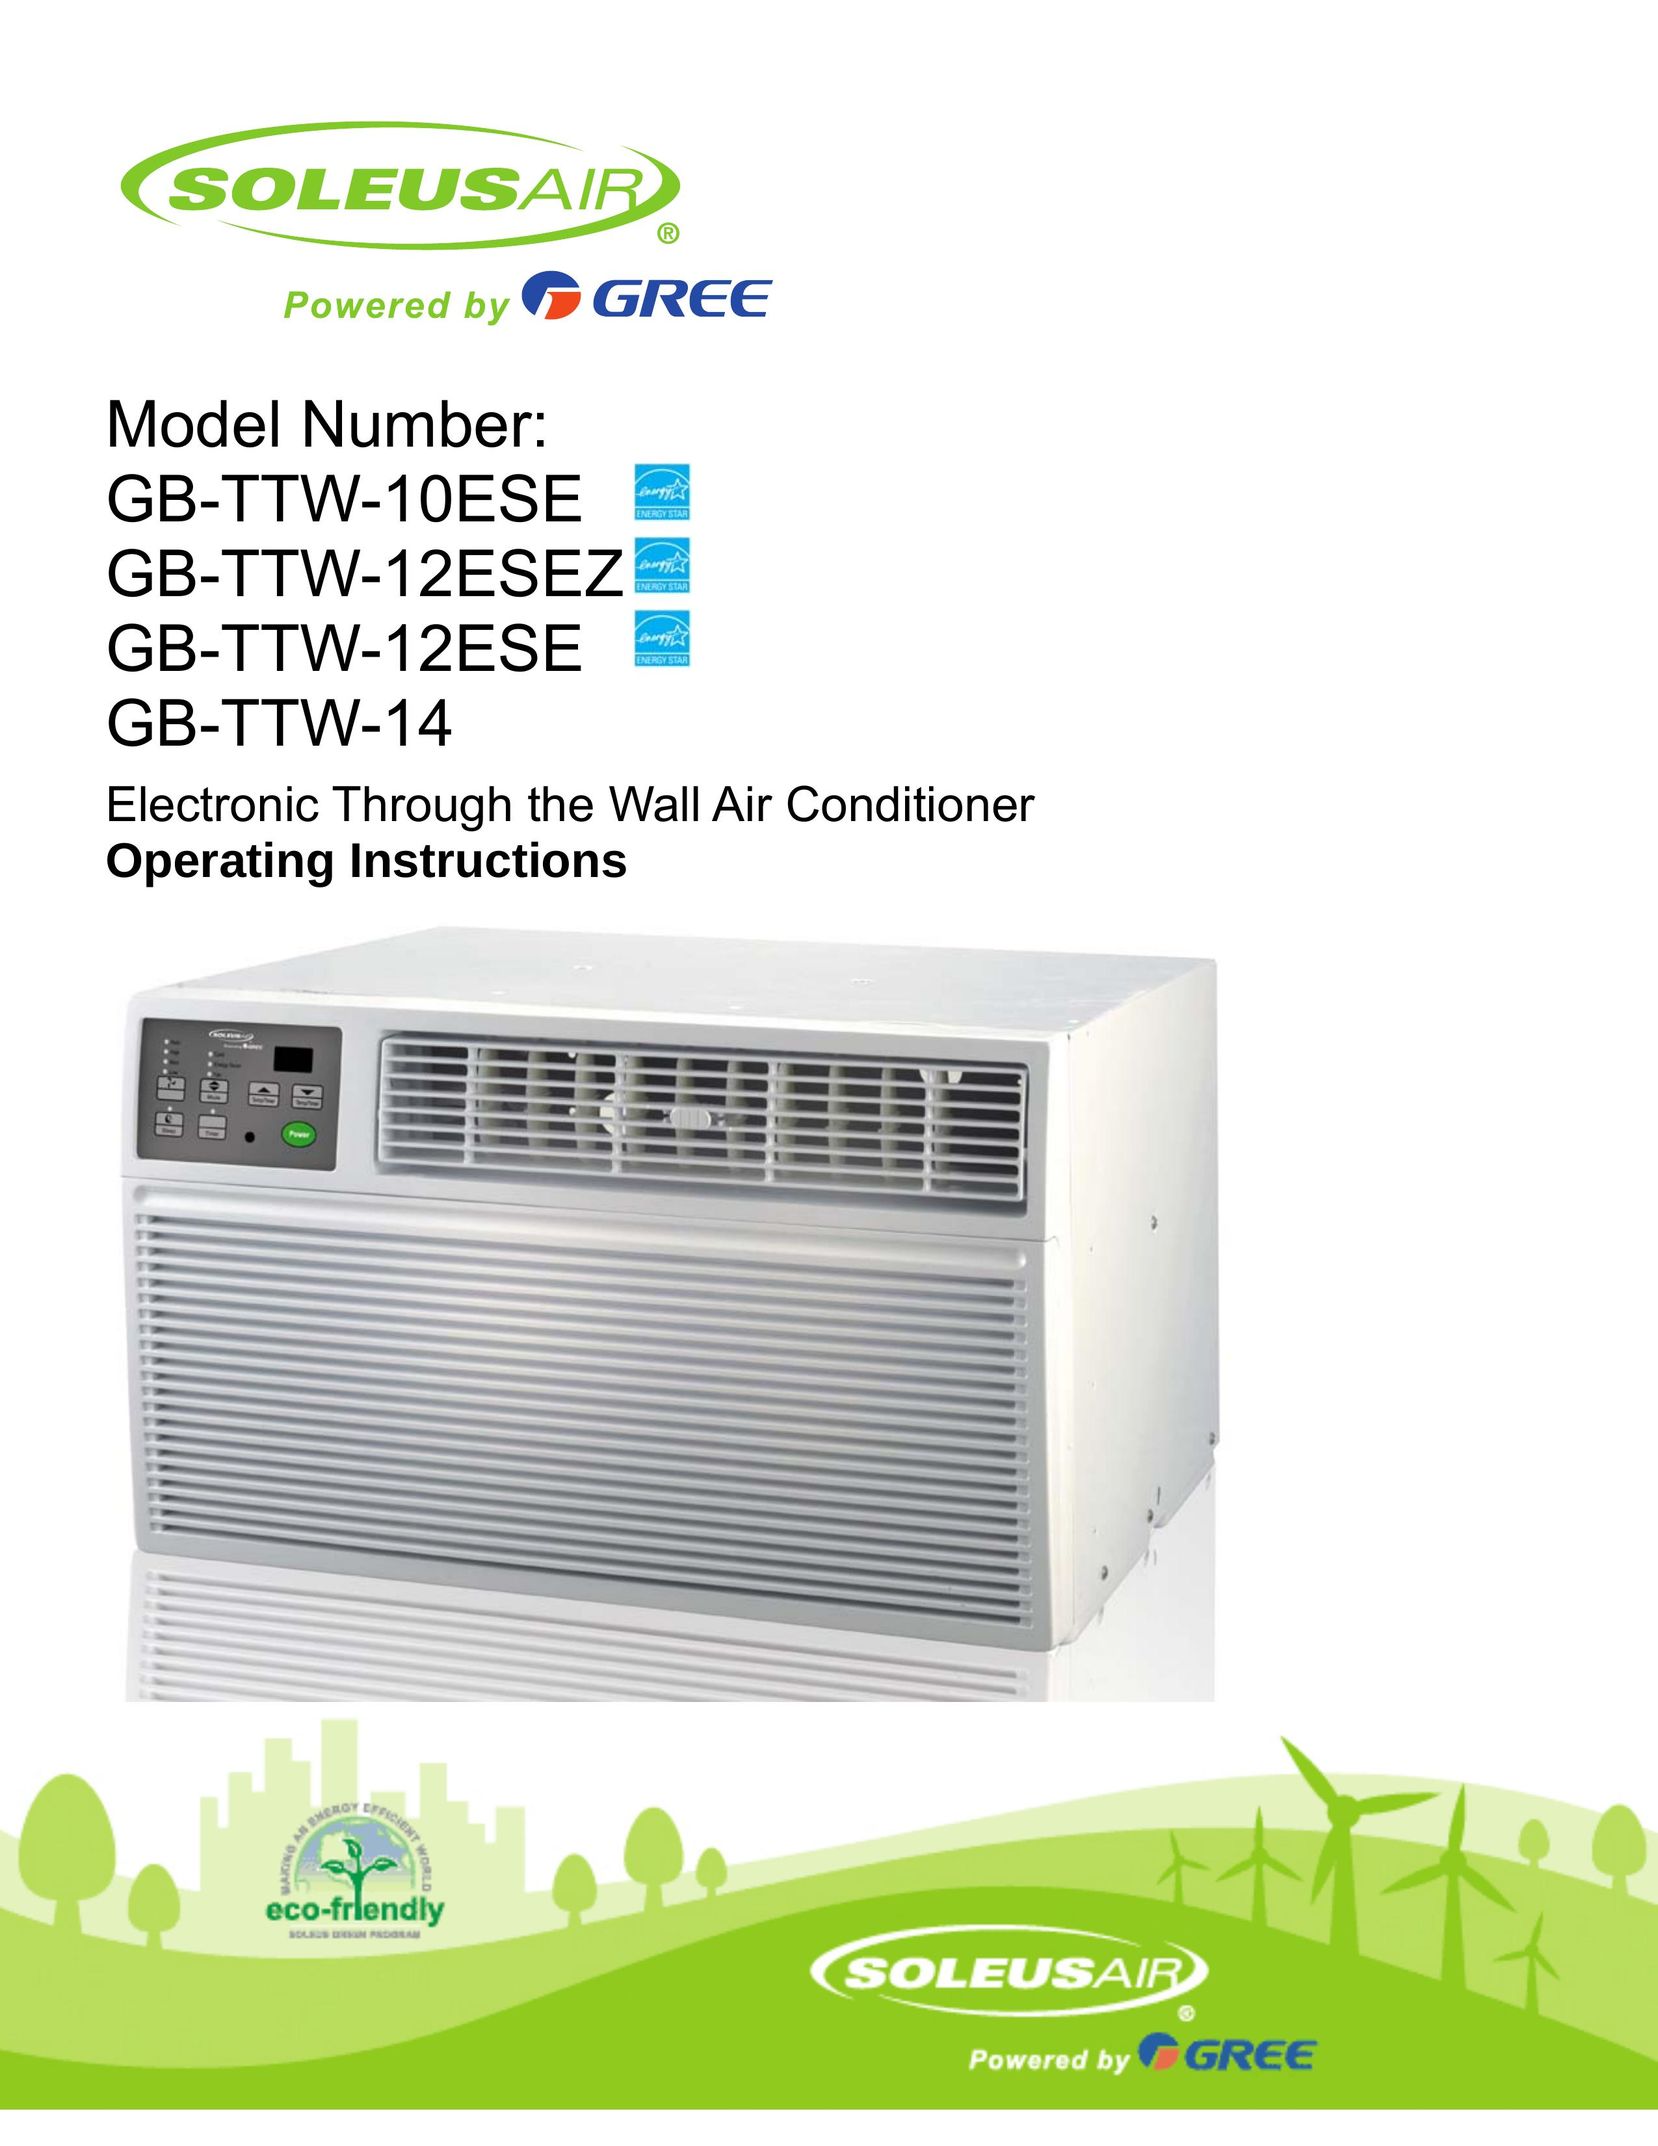 Soleus Air GB-TTW-14 Air Conditioner User Manual